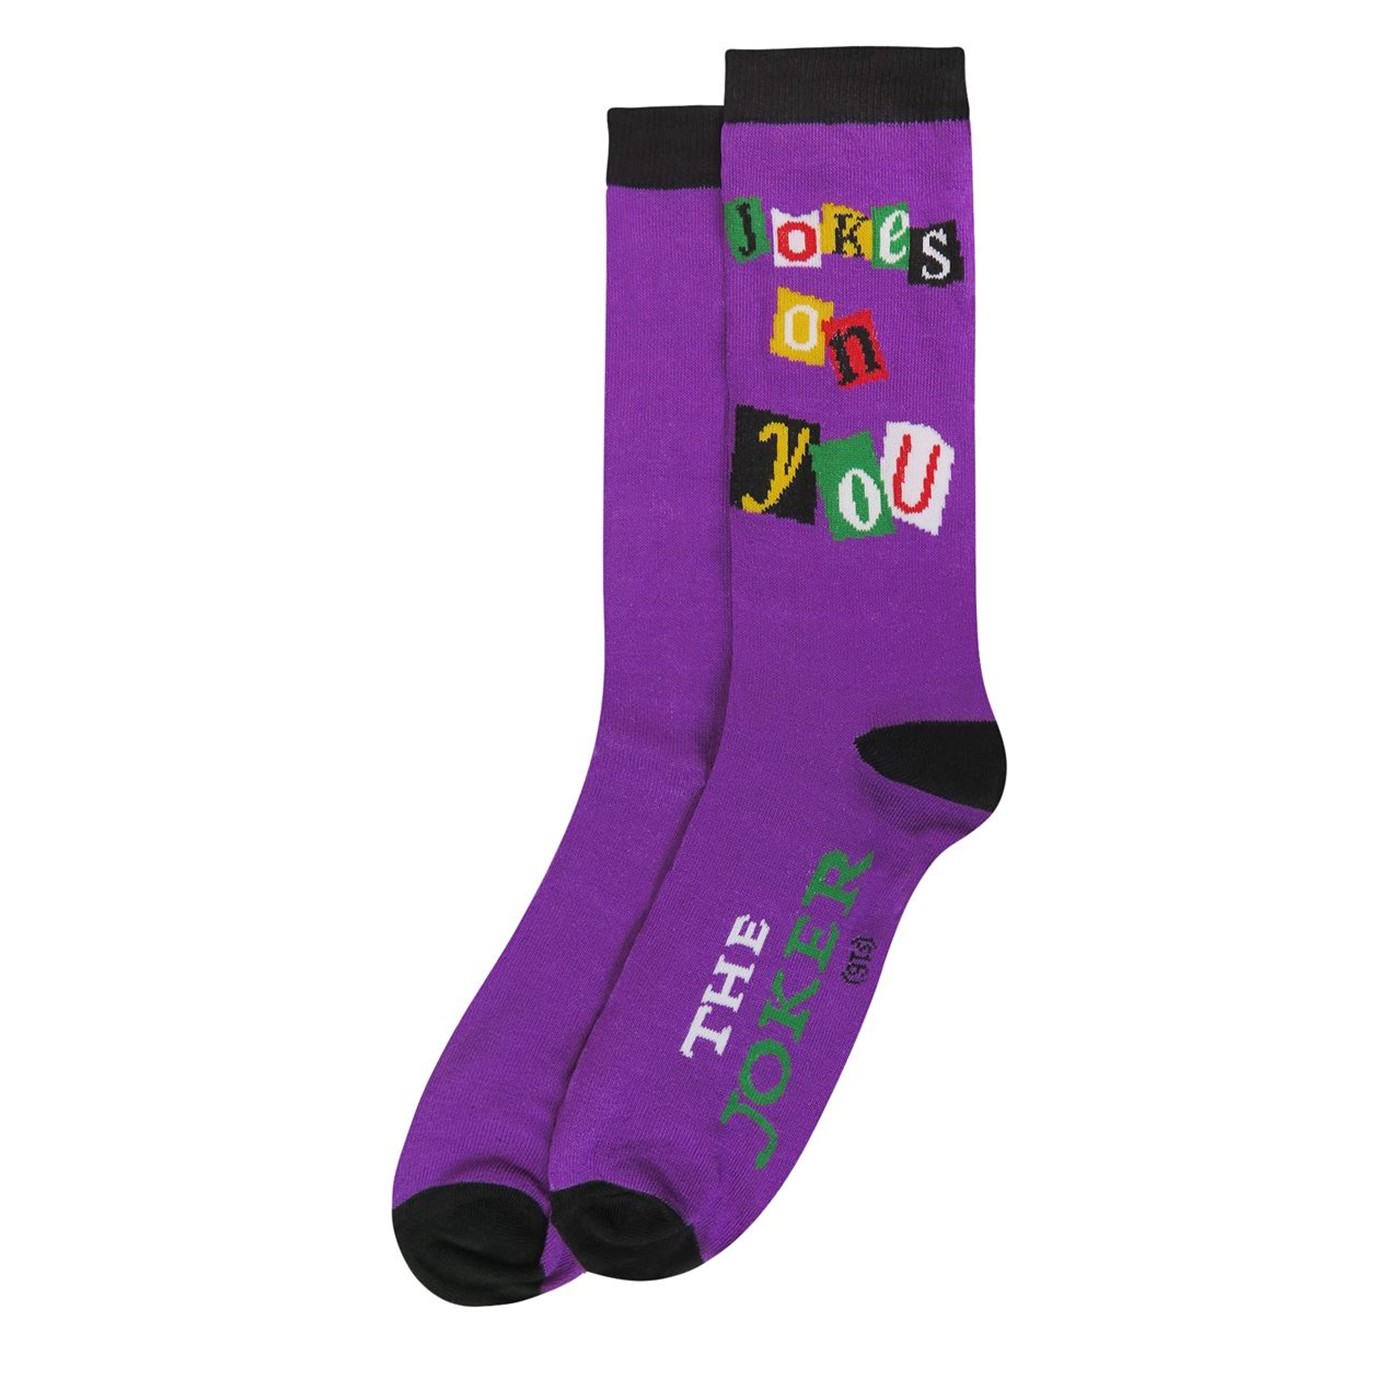 Joker Jokes on You Sock 2 Pack